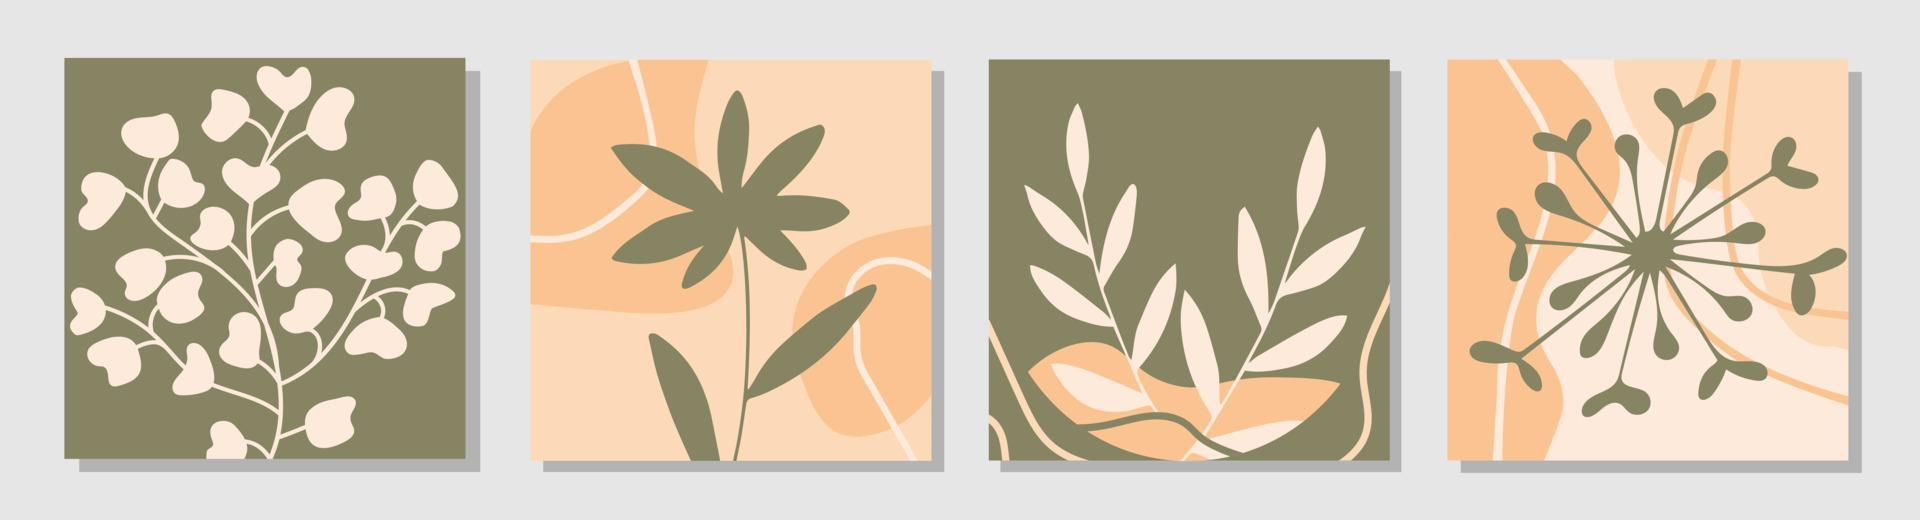 Set von Postern mit abstrakten Formen und Pflanzen im trendigen zeitgenössischen Collage-Stil. vektor